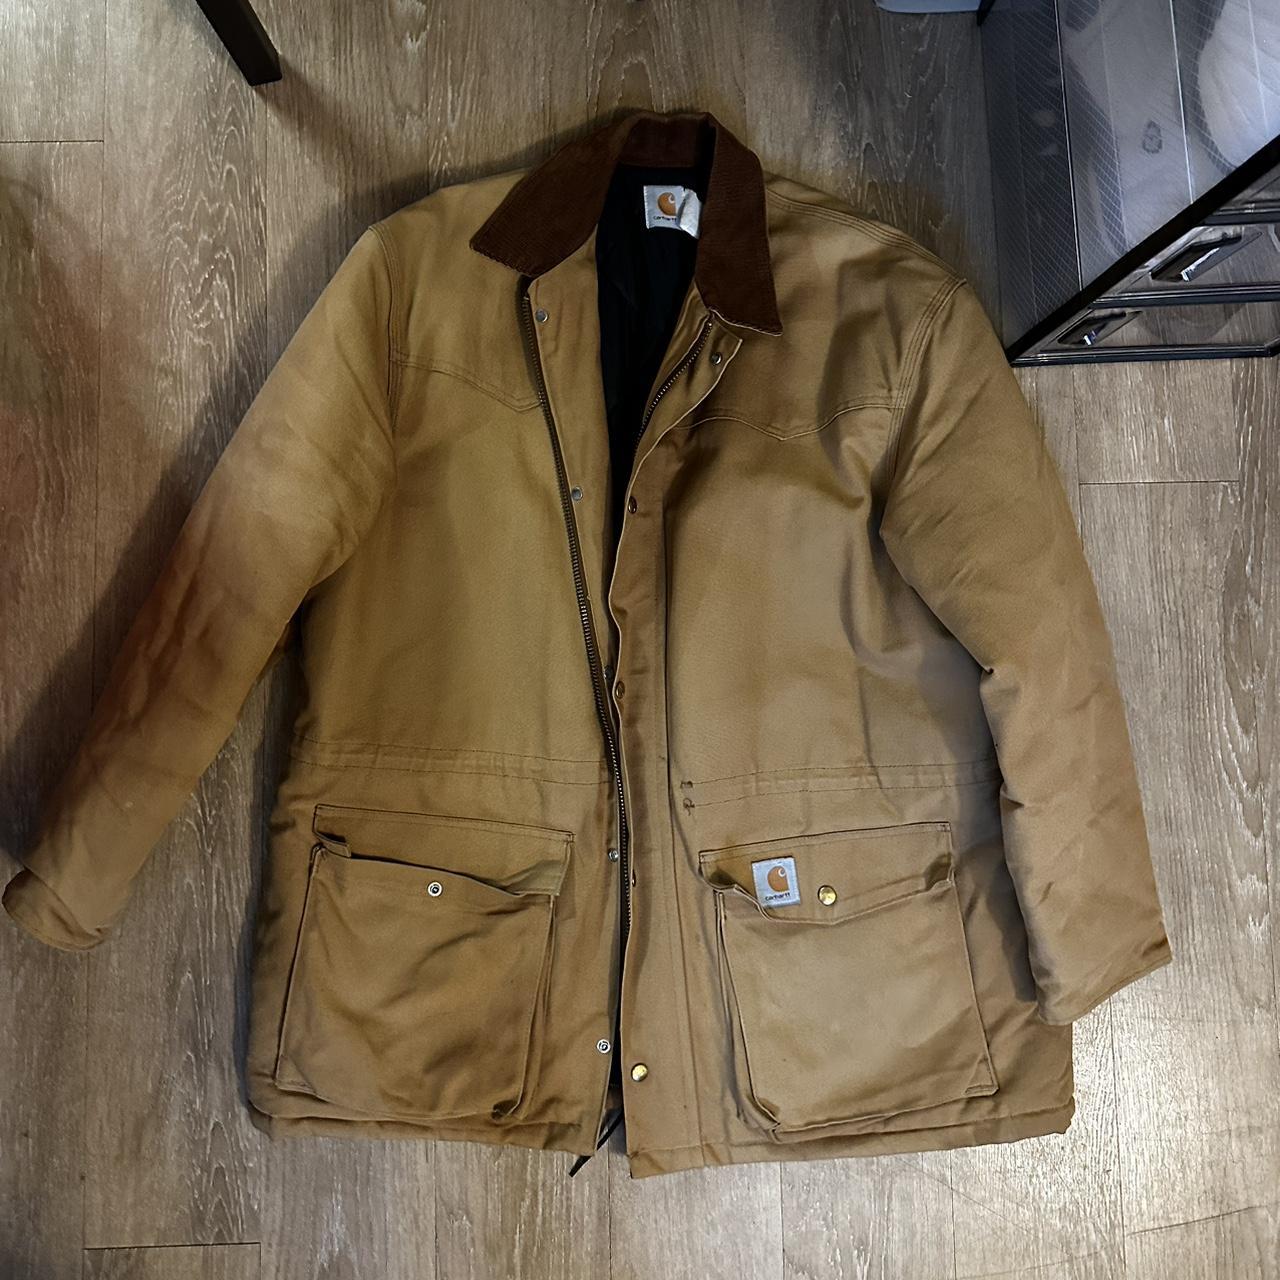 Vintage Carhartt work jacket Sz XL - Depop